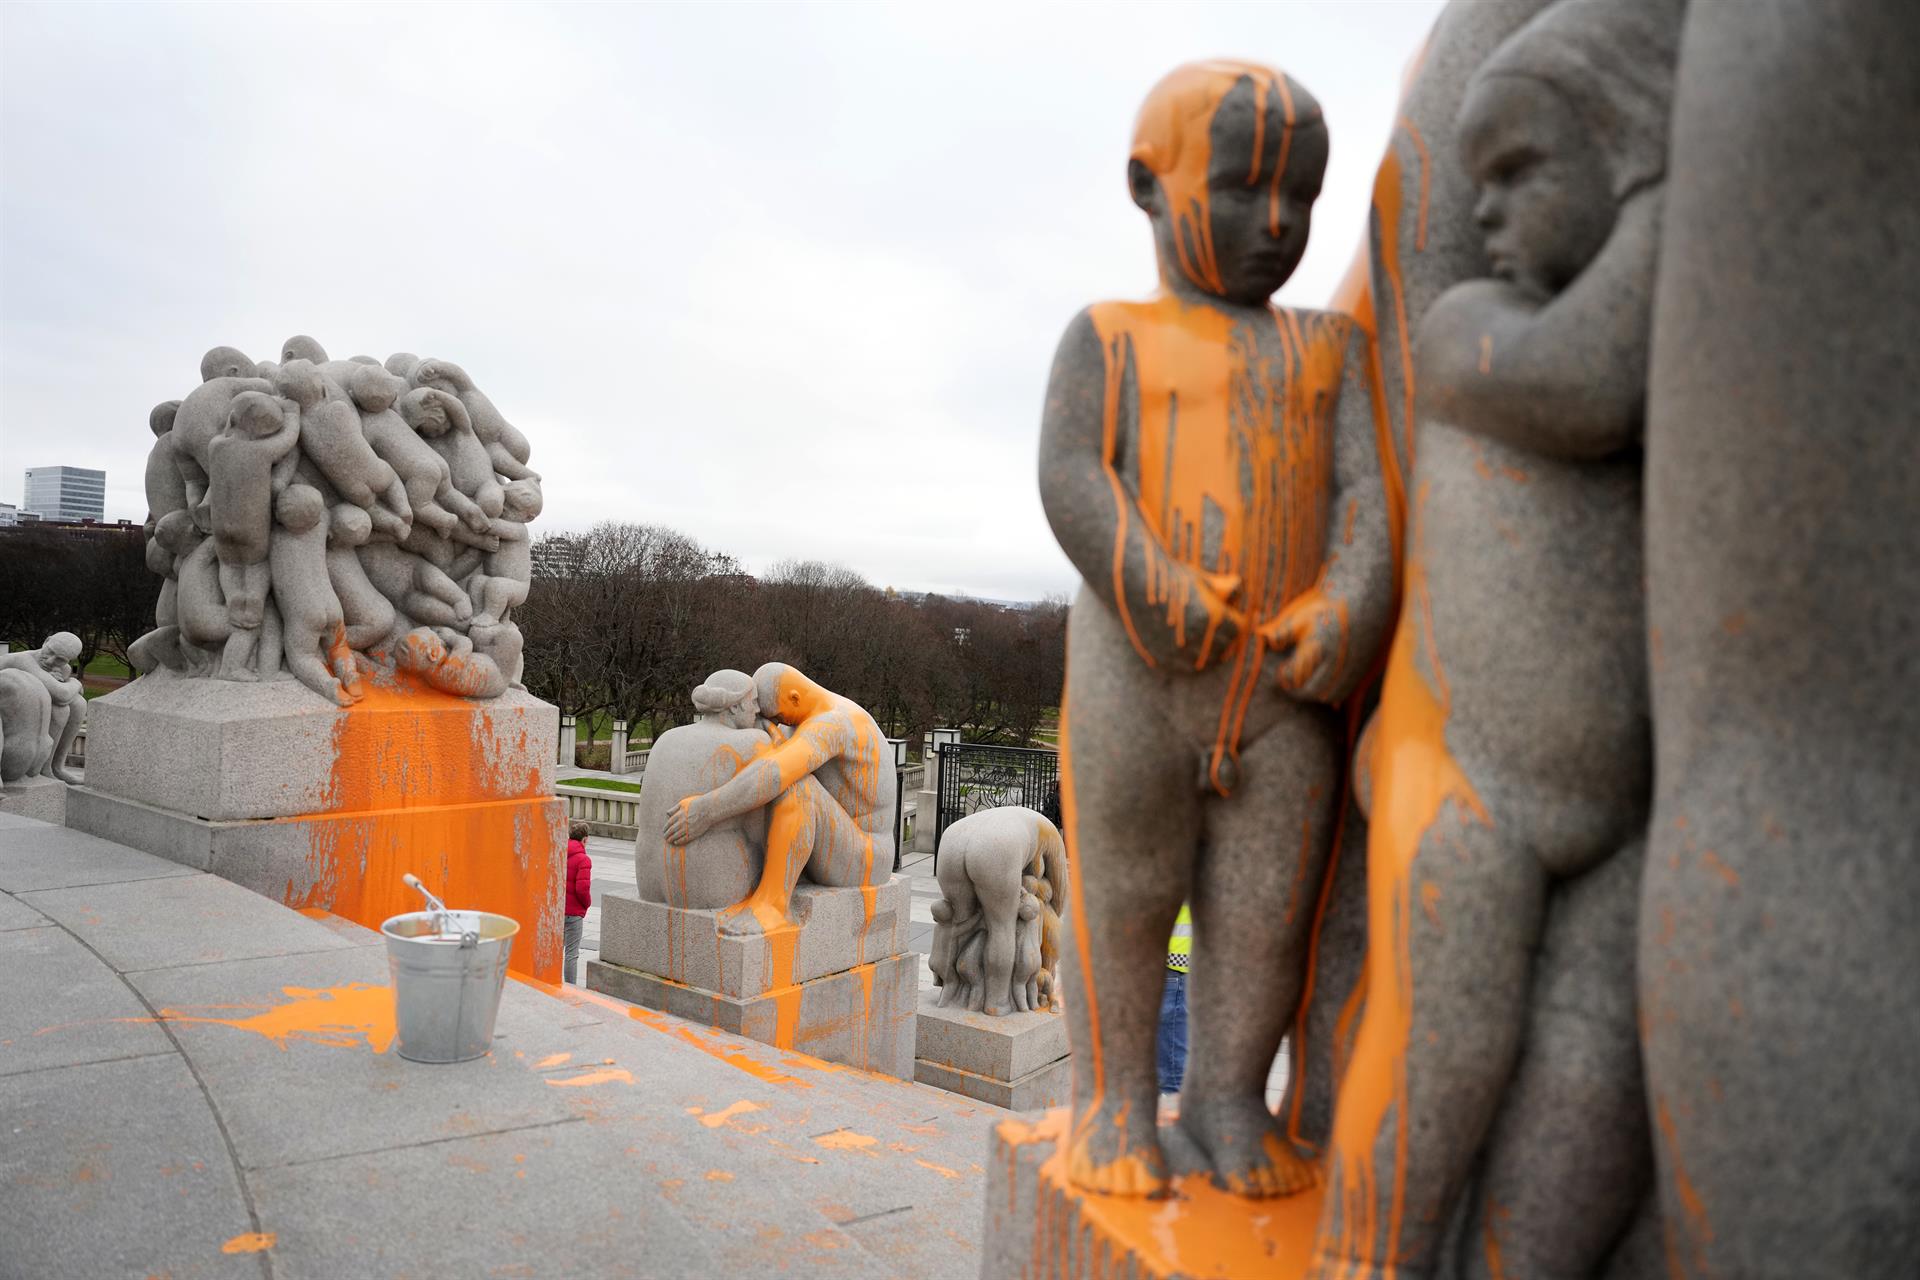 Ecologistas pintan de naranja un monolito en un famoso parque de Oslo